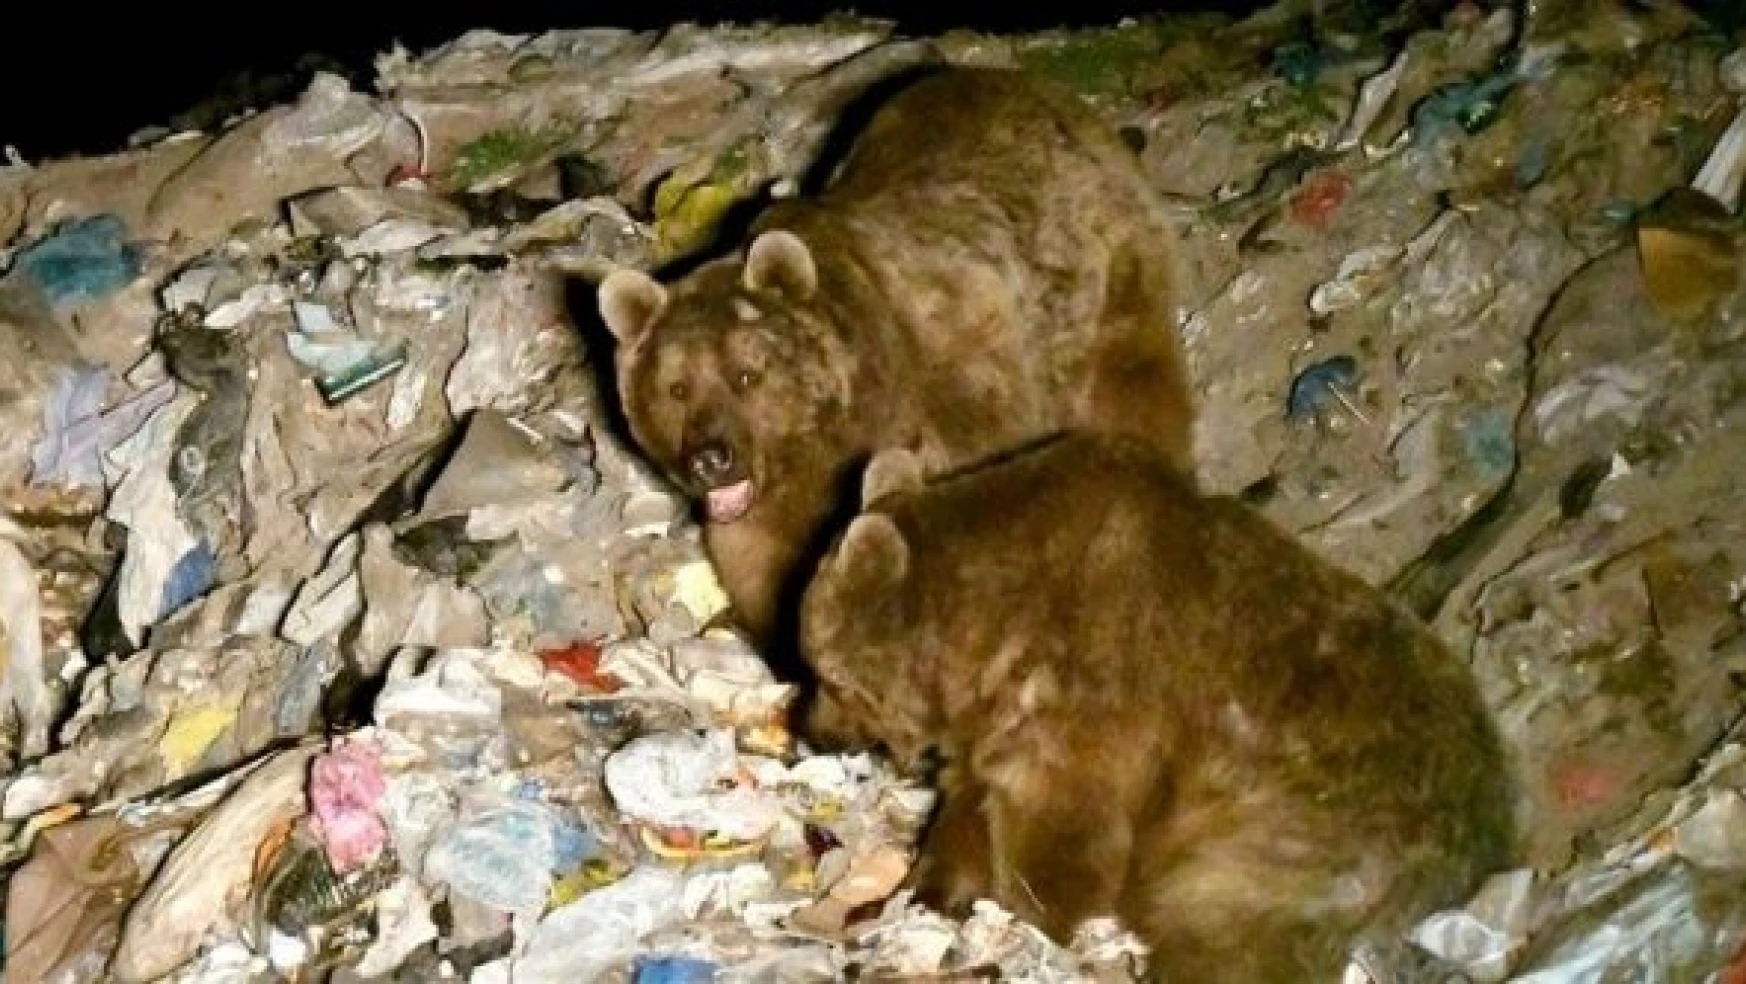 Kars'ta bozayılar çöplükte birbirine girdi!